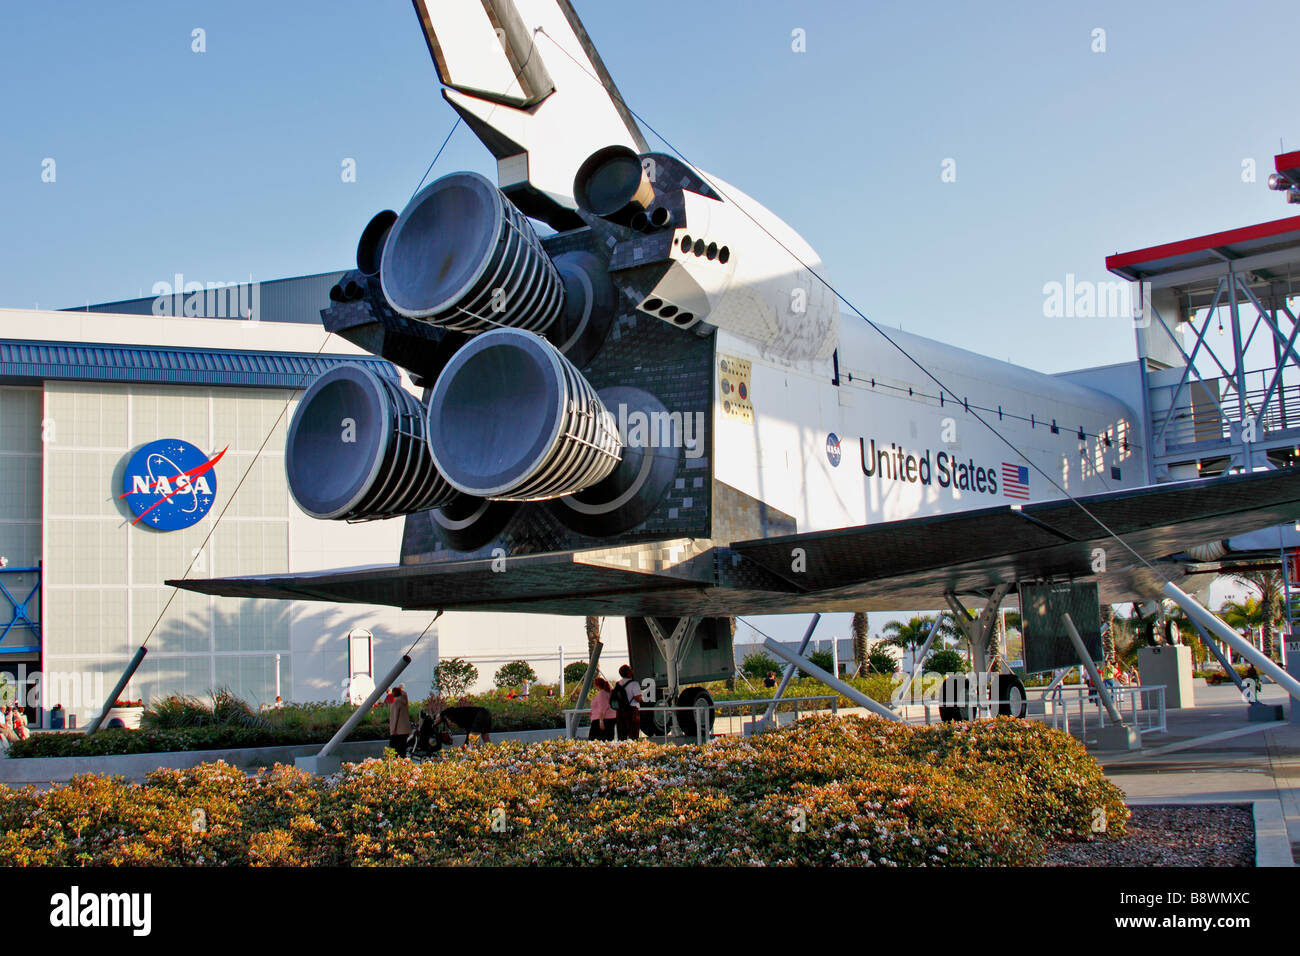 Scala completa replica della navetta spaziale Explorer sul display presso la NASA Kennedy Space Center Visitor Complex, Cape Canaveral, in Florida Foto Stock